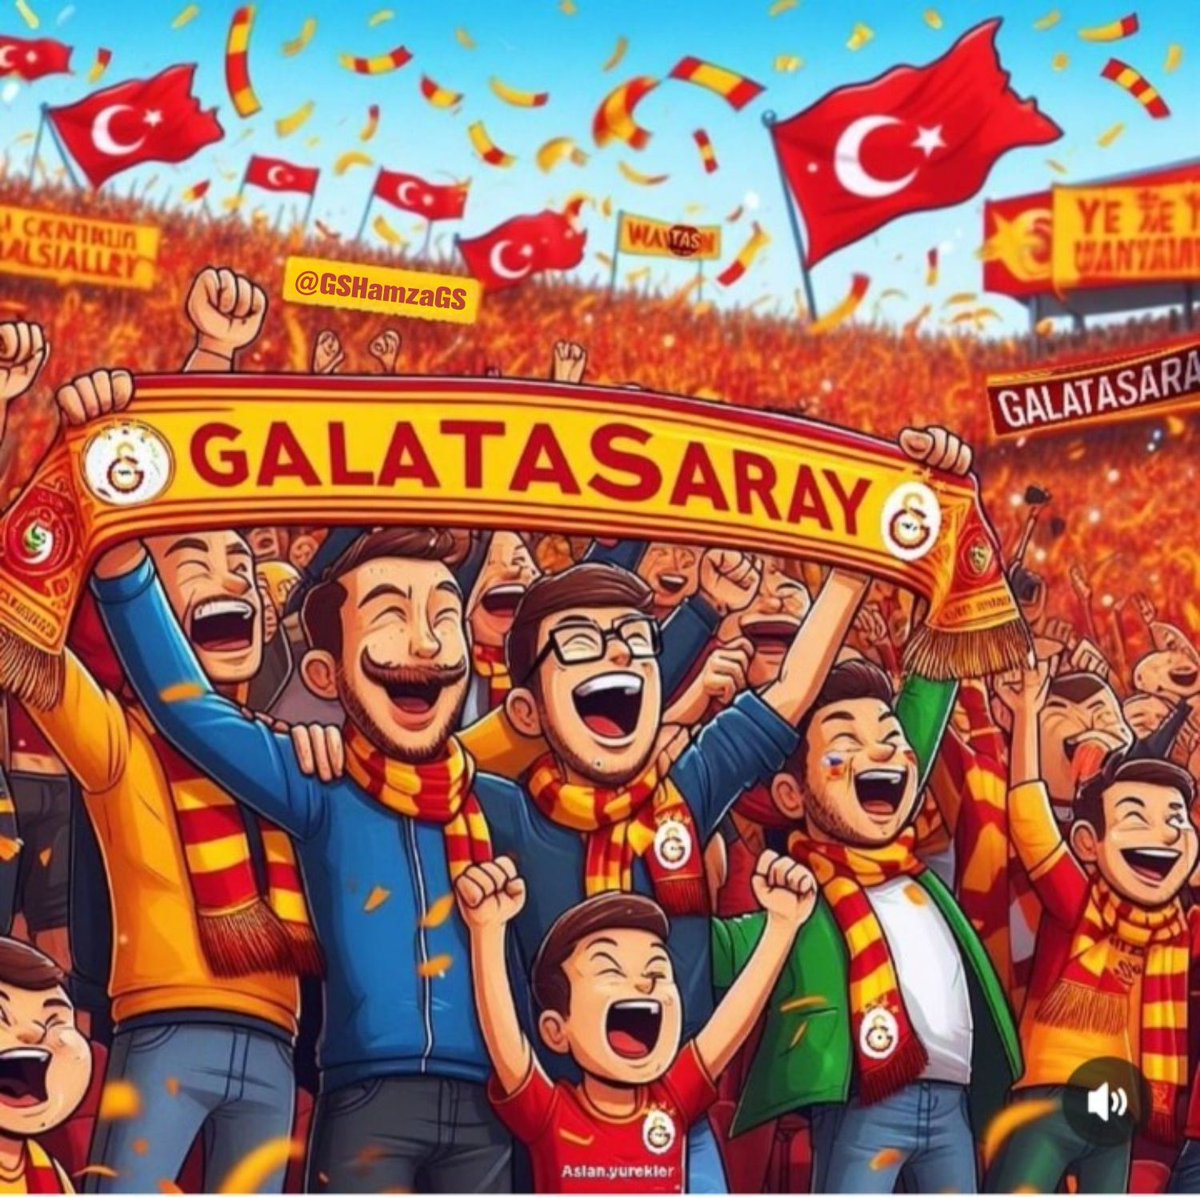 Nekadar Galatasaray lı varsa hepsine günaydın 💛❤️💥💥💥💥🦁
#BugünGünlerdenGalatasaray